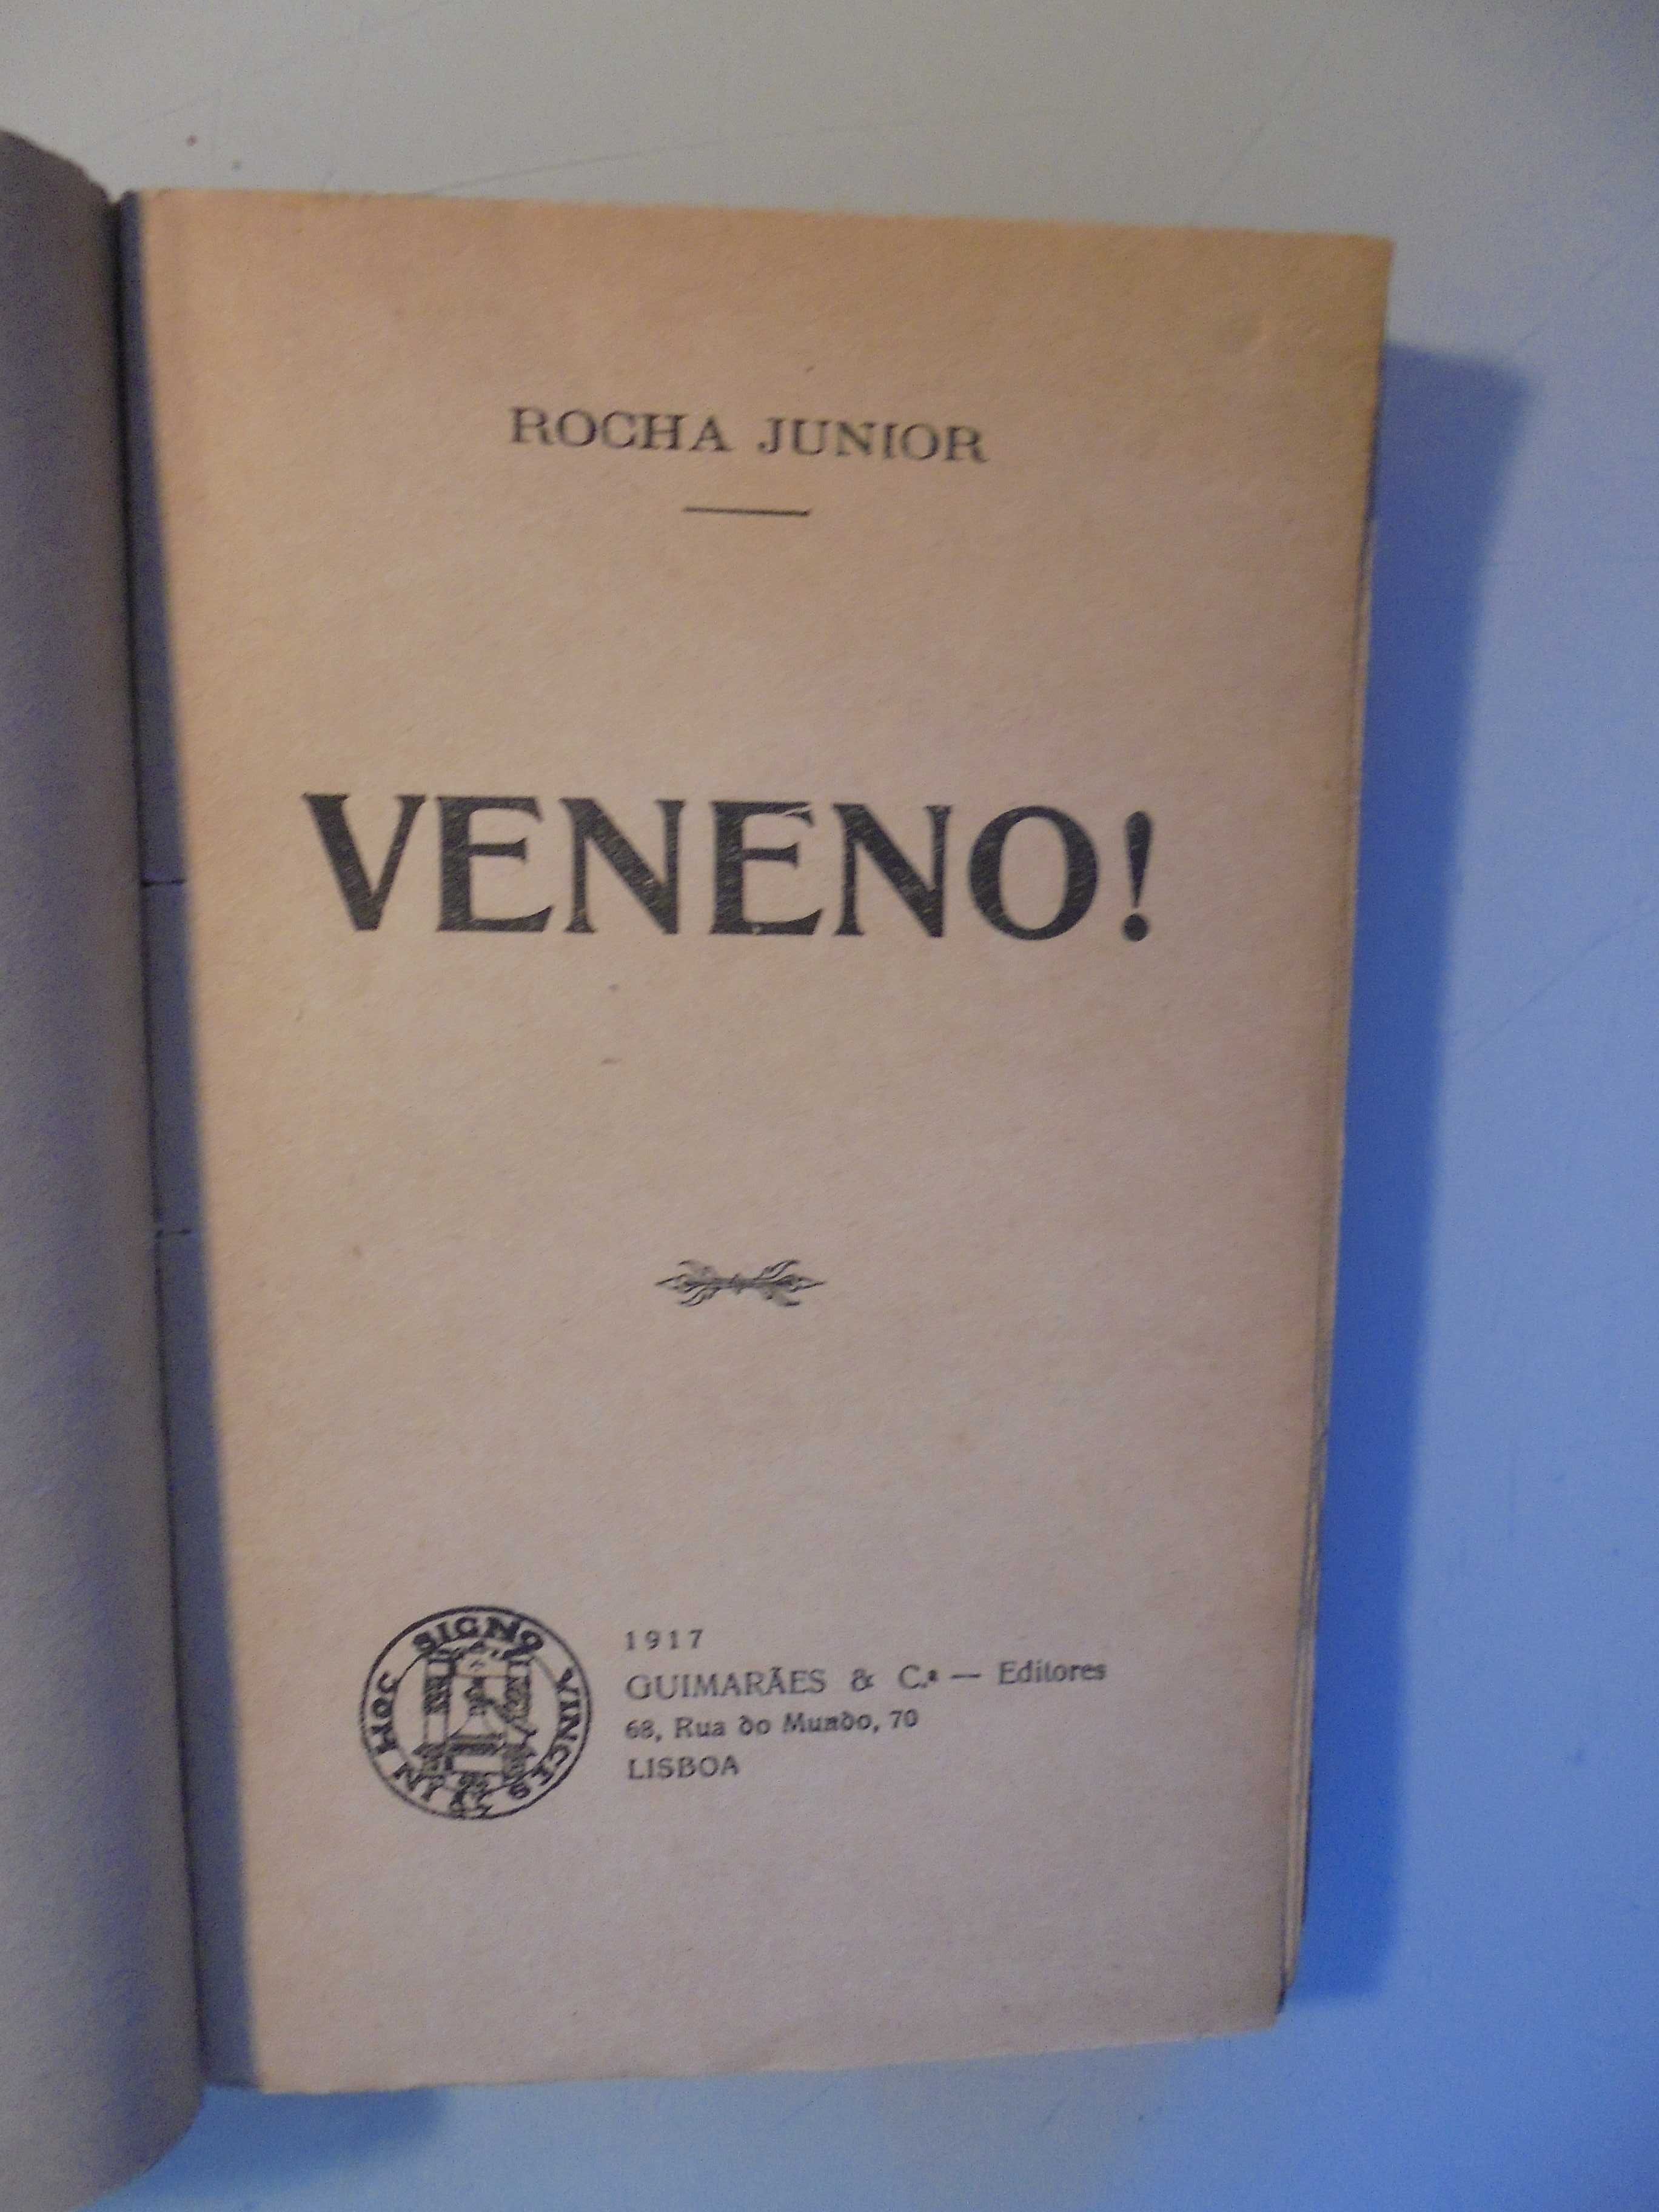 Junior (Rocha);Veneno;Guimarães & Cª Editores,1ª Edição,1917